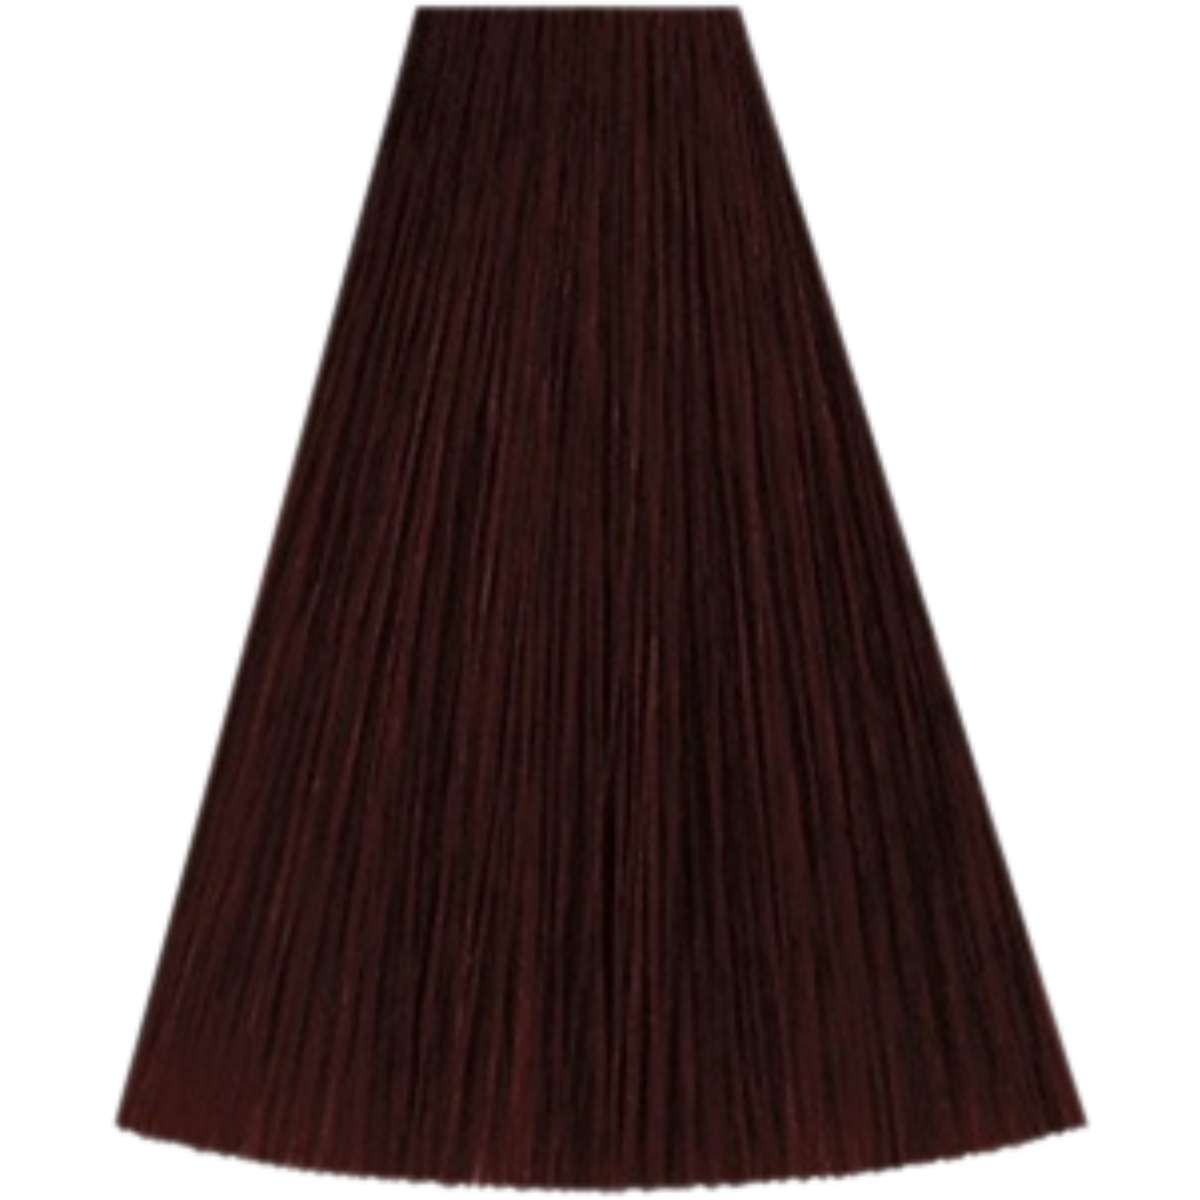 צבע שיער 3/5 DARK BROWN MAHOGANY קאדוס KADUS צבע לשיער 60 גרם